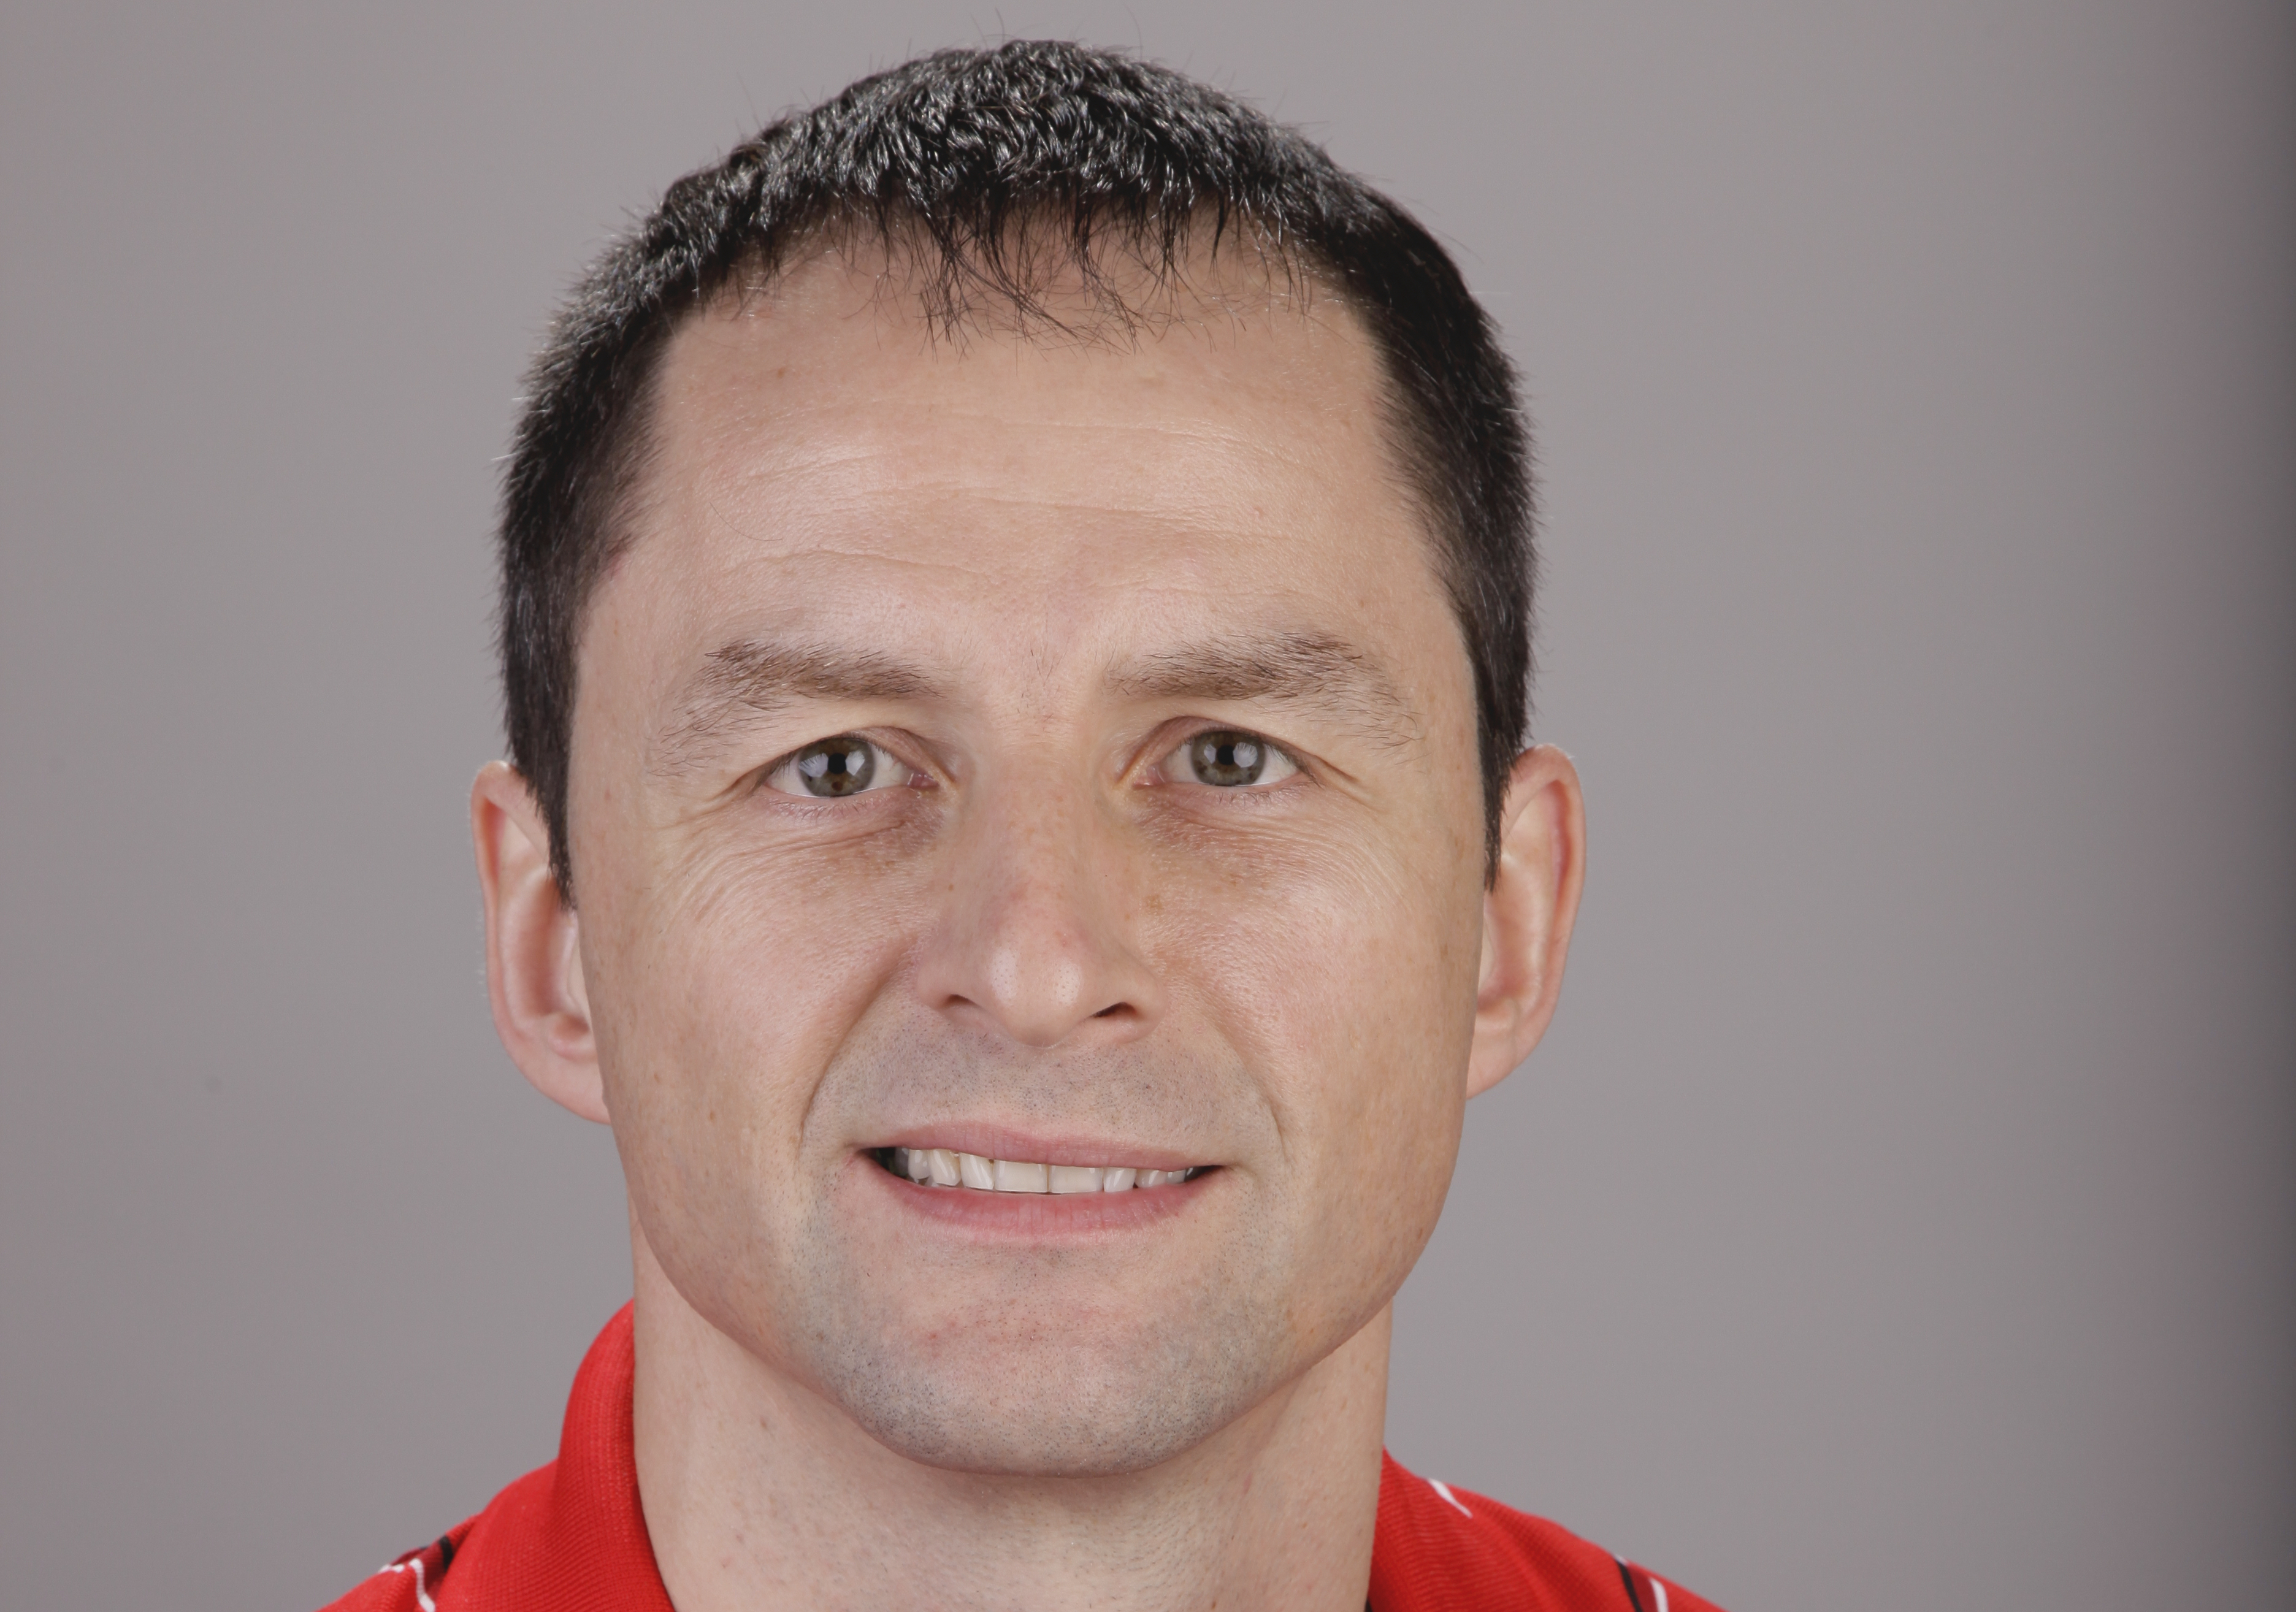 Яблонскис тренер